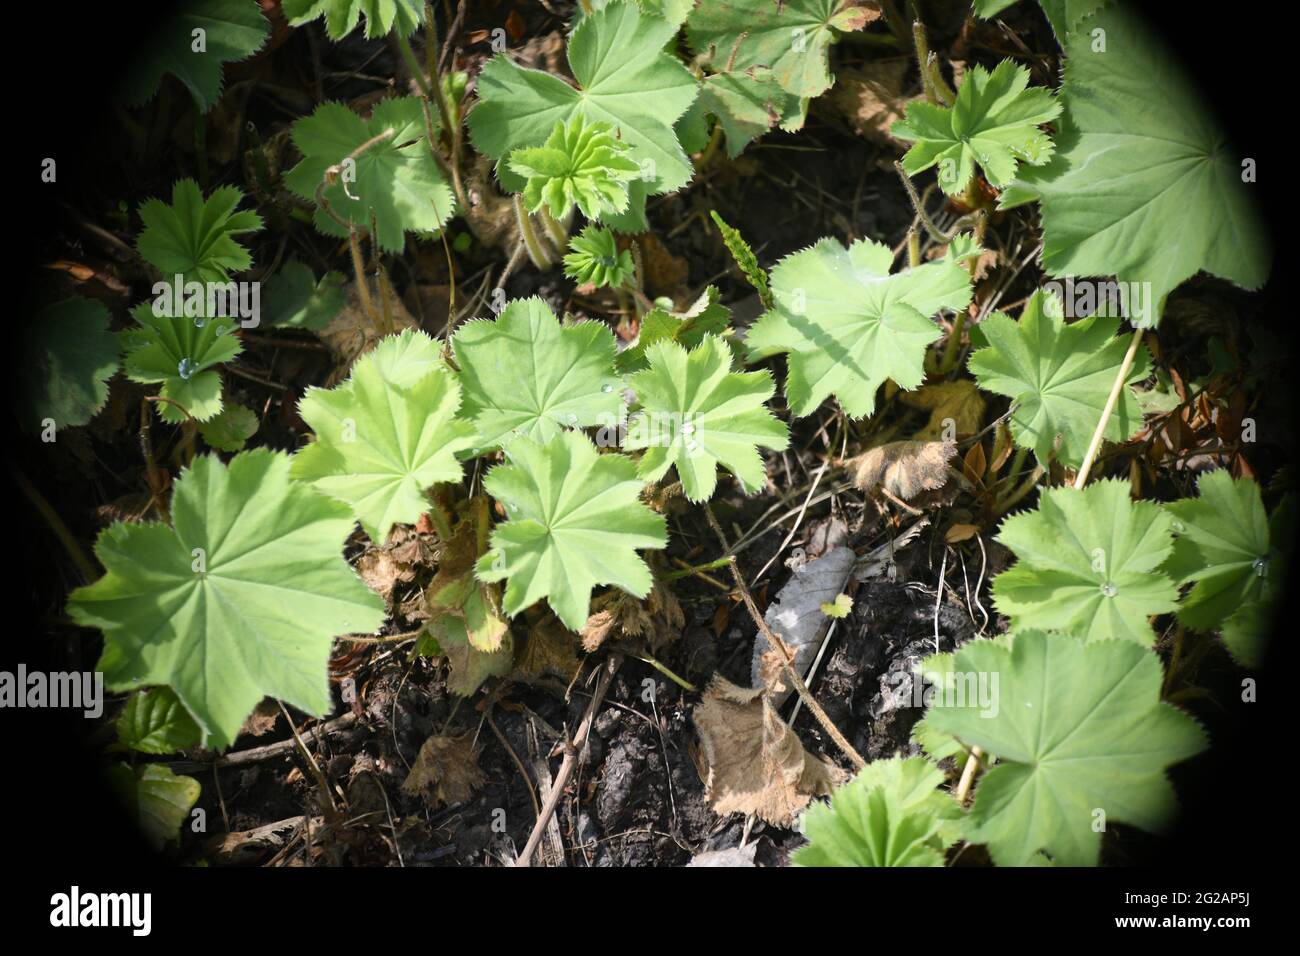 Mehrere Frauenmantelpflanzen - alchemilla vulgares - der heiligen Pflanze der Germanen, auf kargem Boden Stock Photo